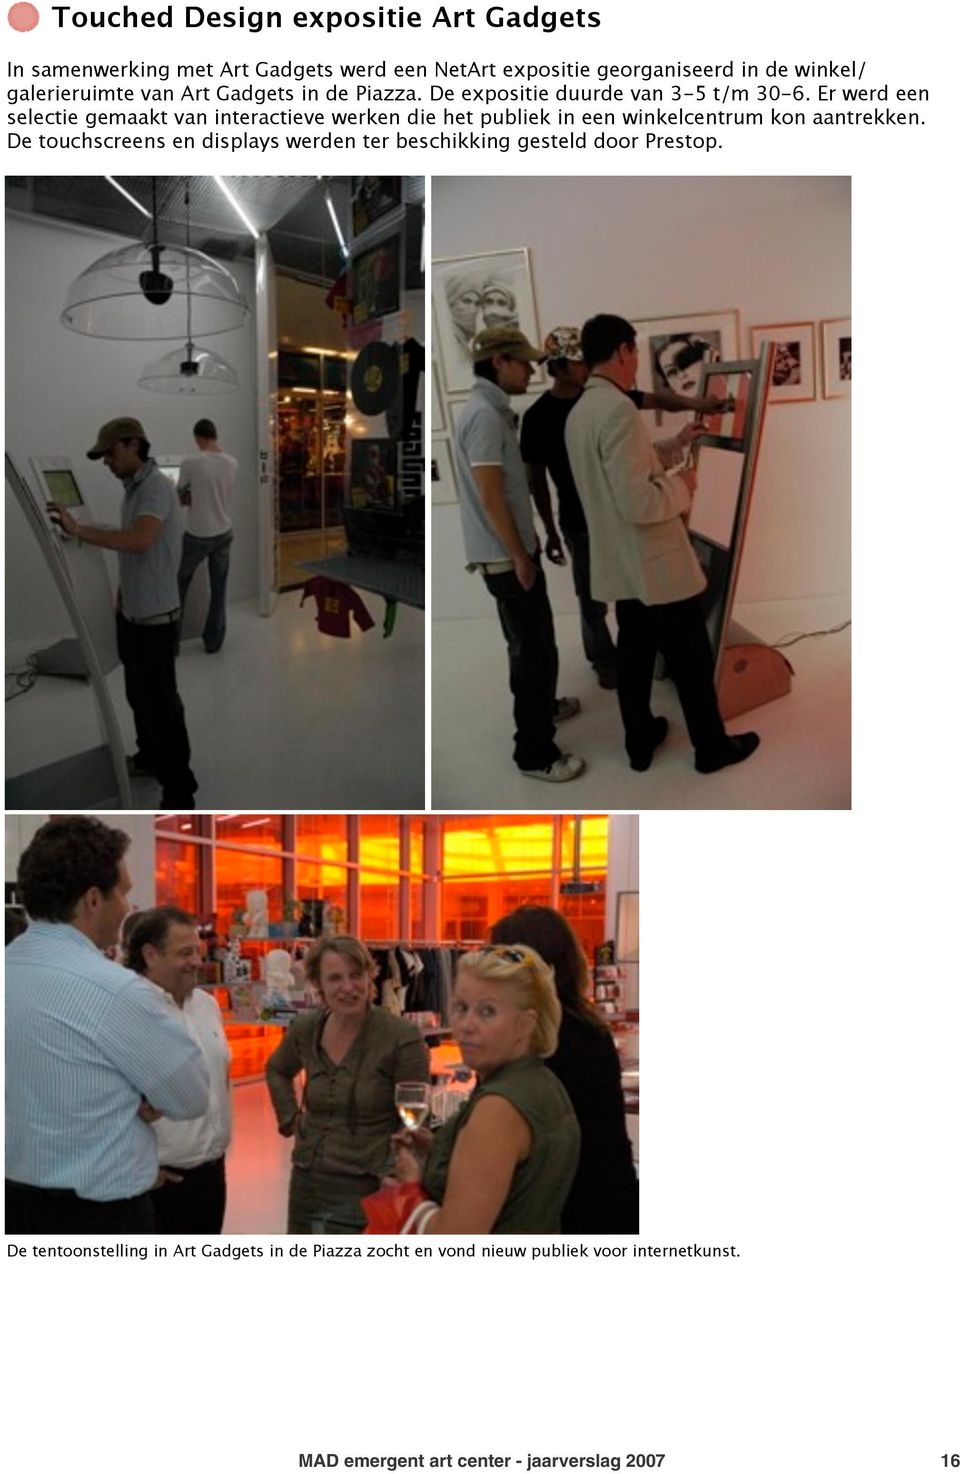 Er werd een selectie gemaakt van interactieve werken die het publiek in een winkelcentrum kon aantrekken.